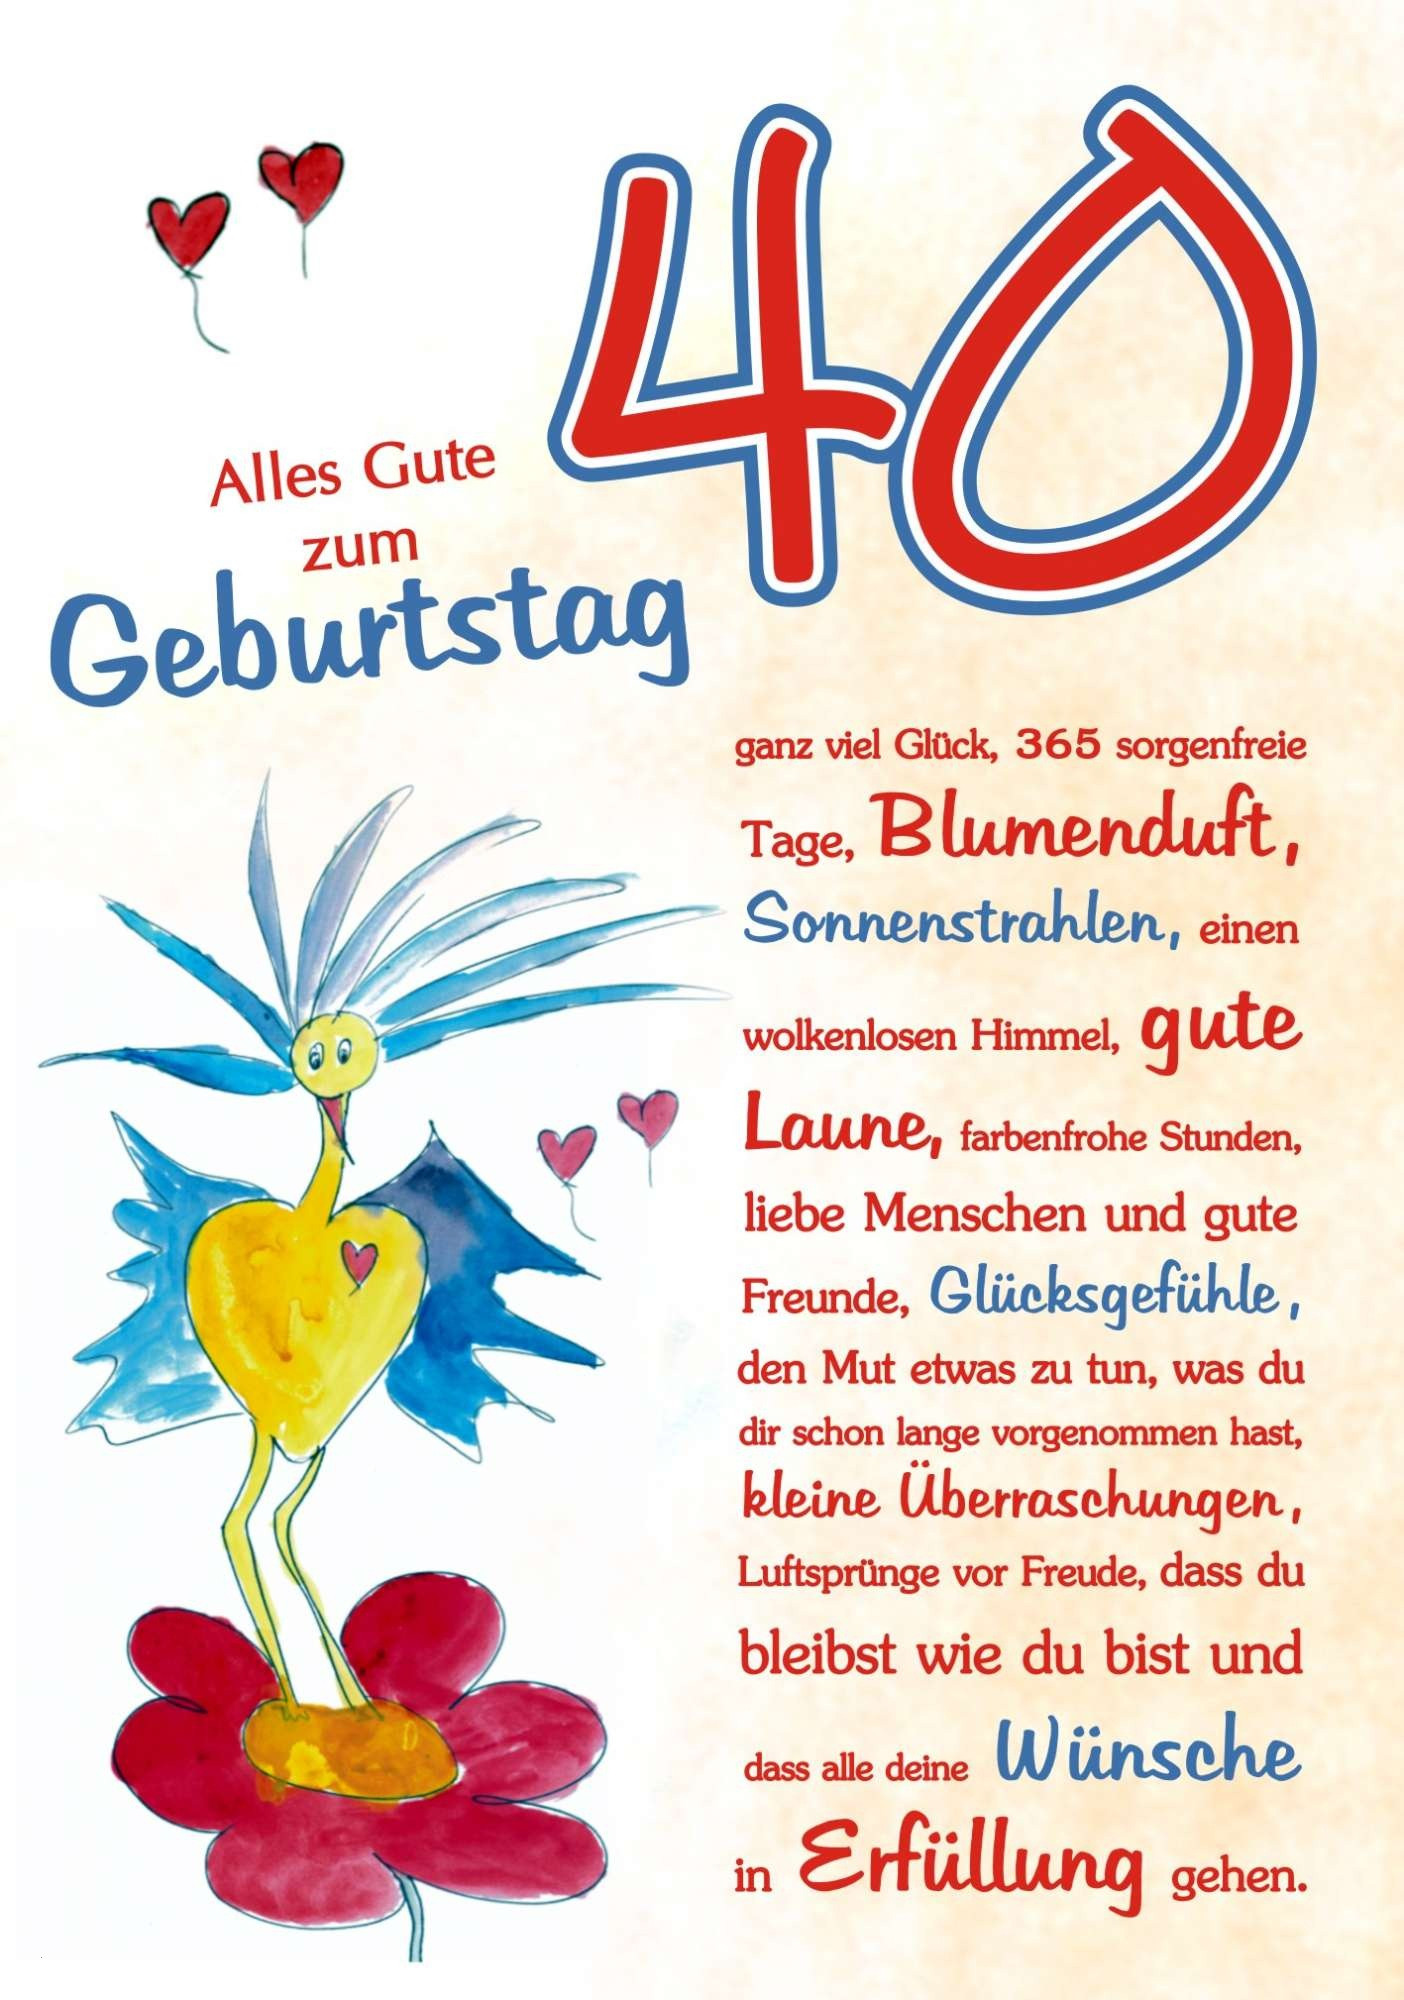 Geburtstagswünsche Chef Stilvoll
 Karten Glückwünsche Luxus Geburtstagswünsche Zum 40